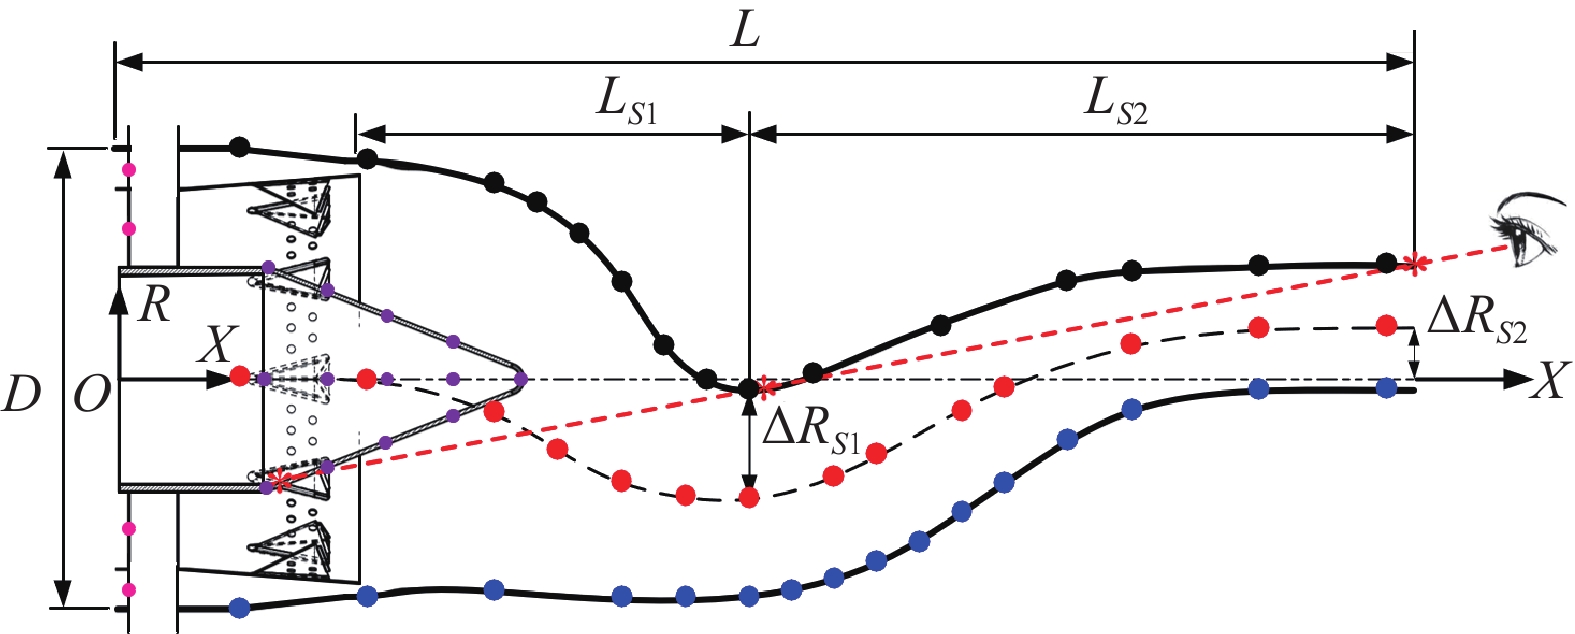 Schematic diagram of serpentine 2-D exhaust system